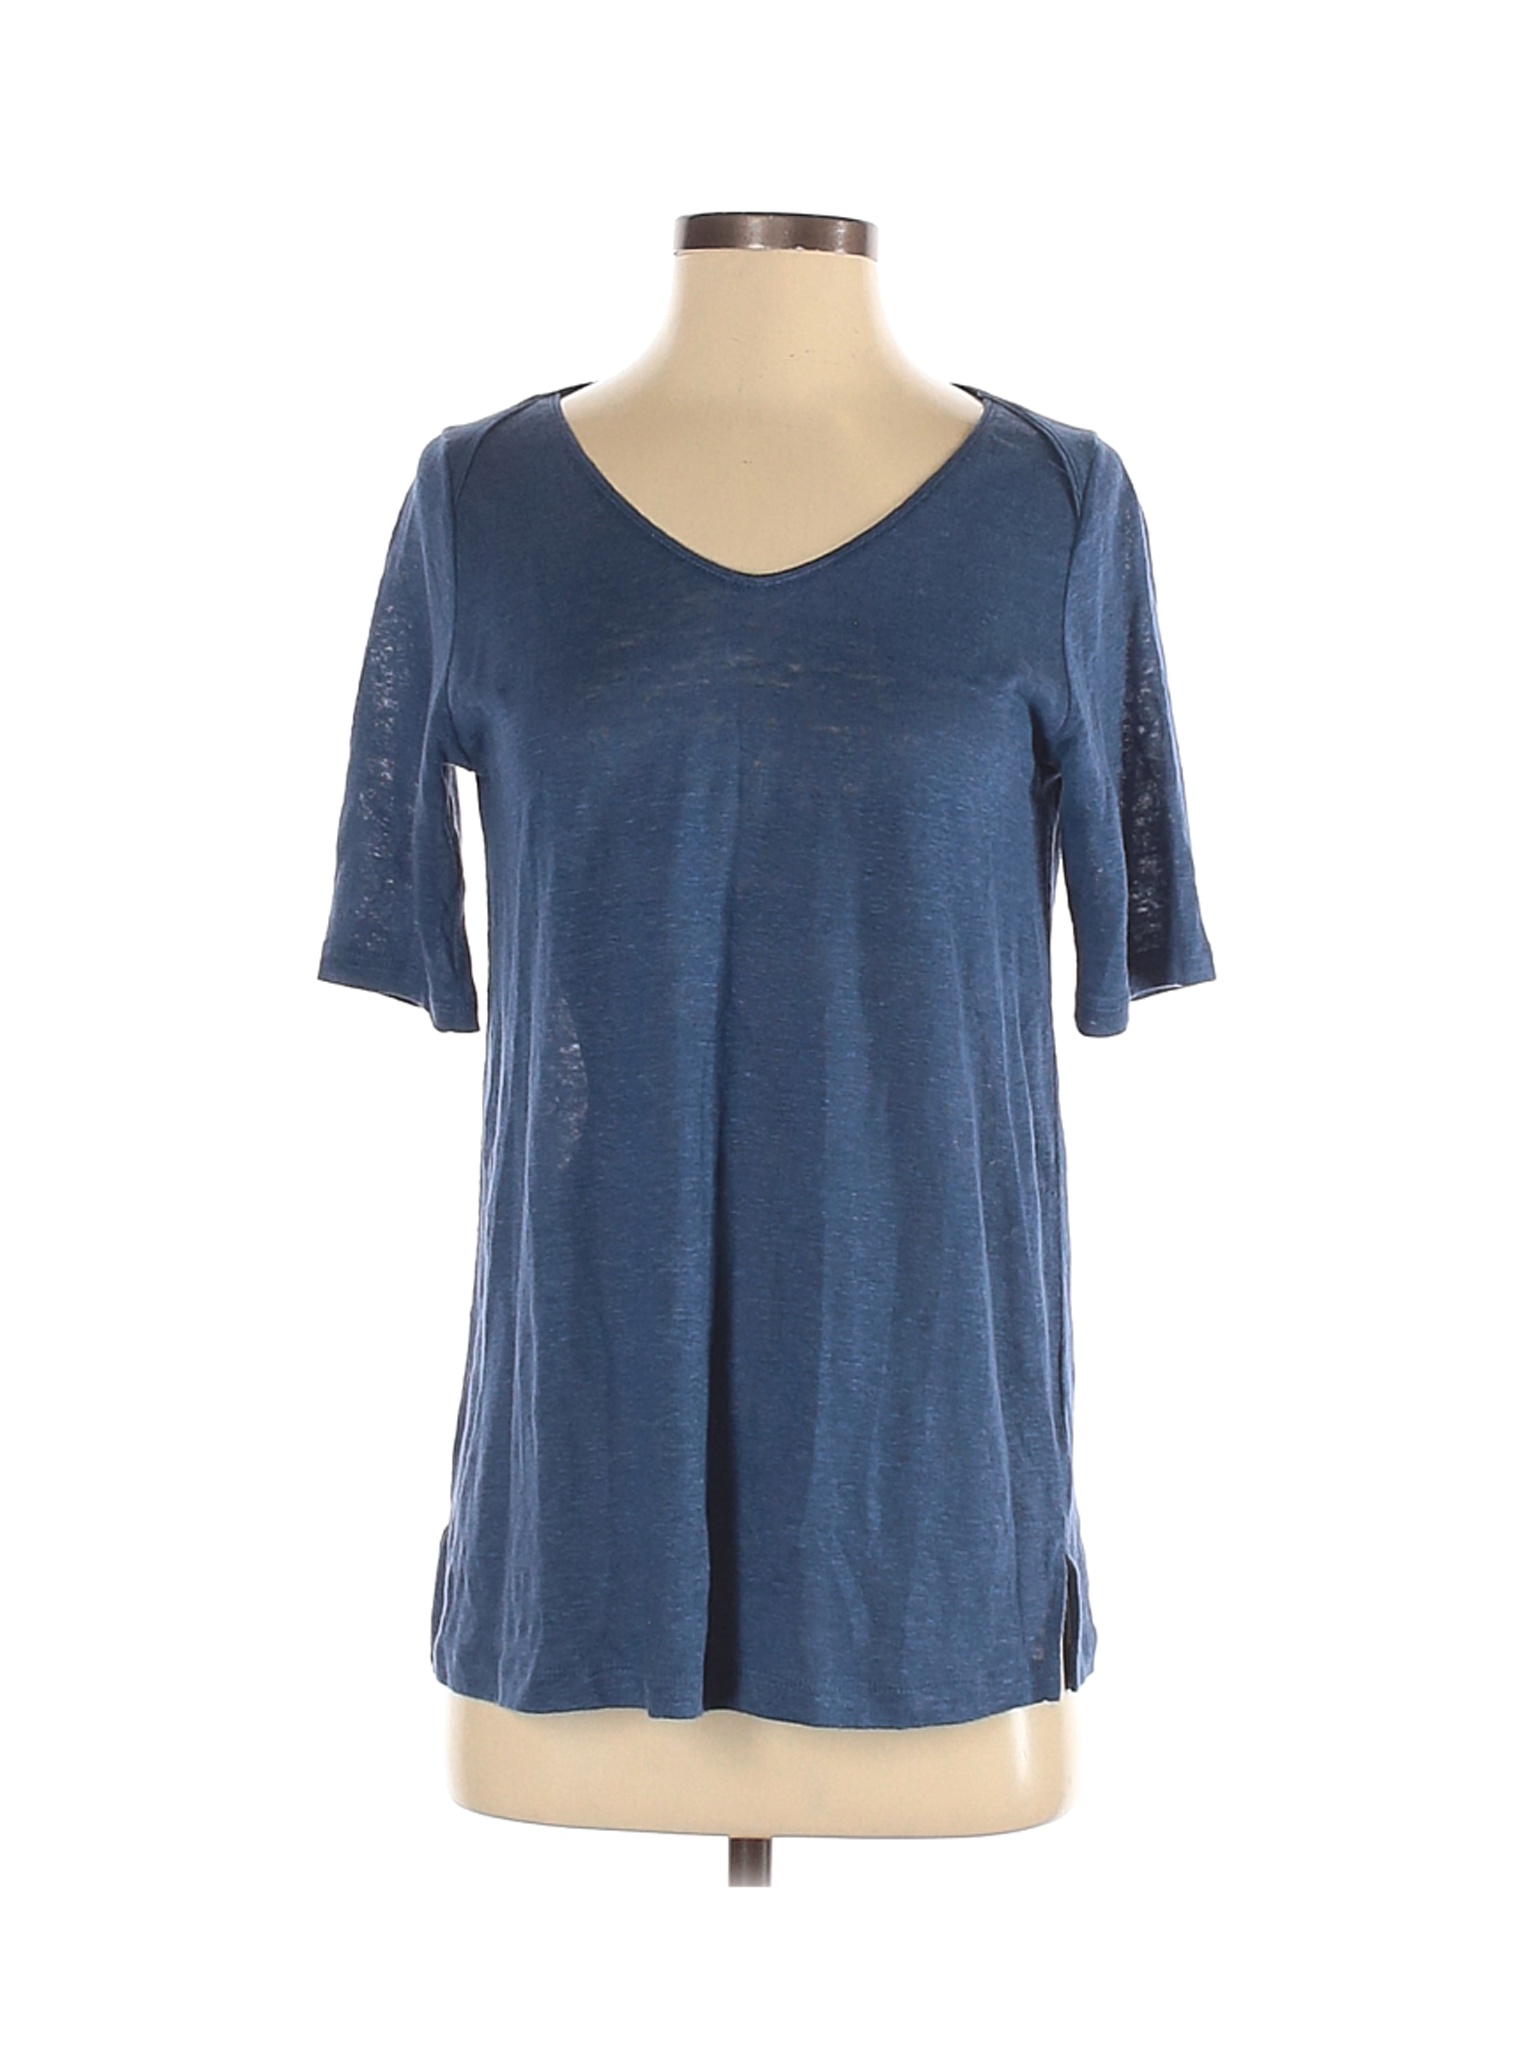 J.Jill Women Blue Short Sleeve T-Shirt XS | eBay